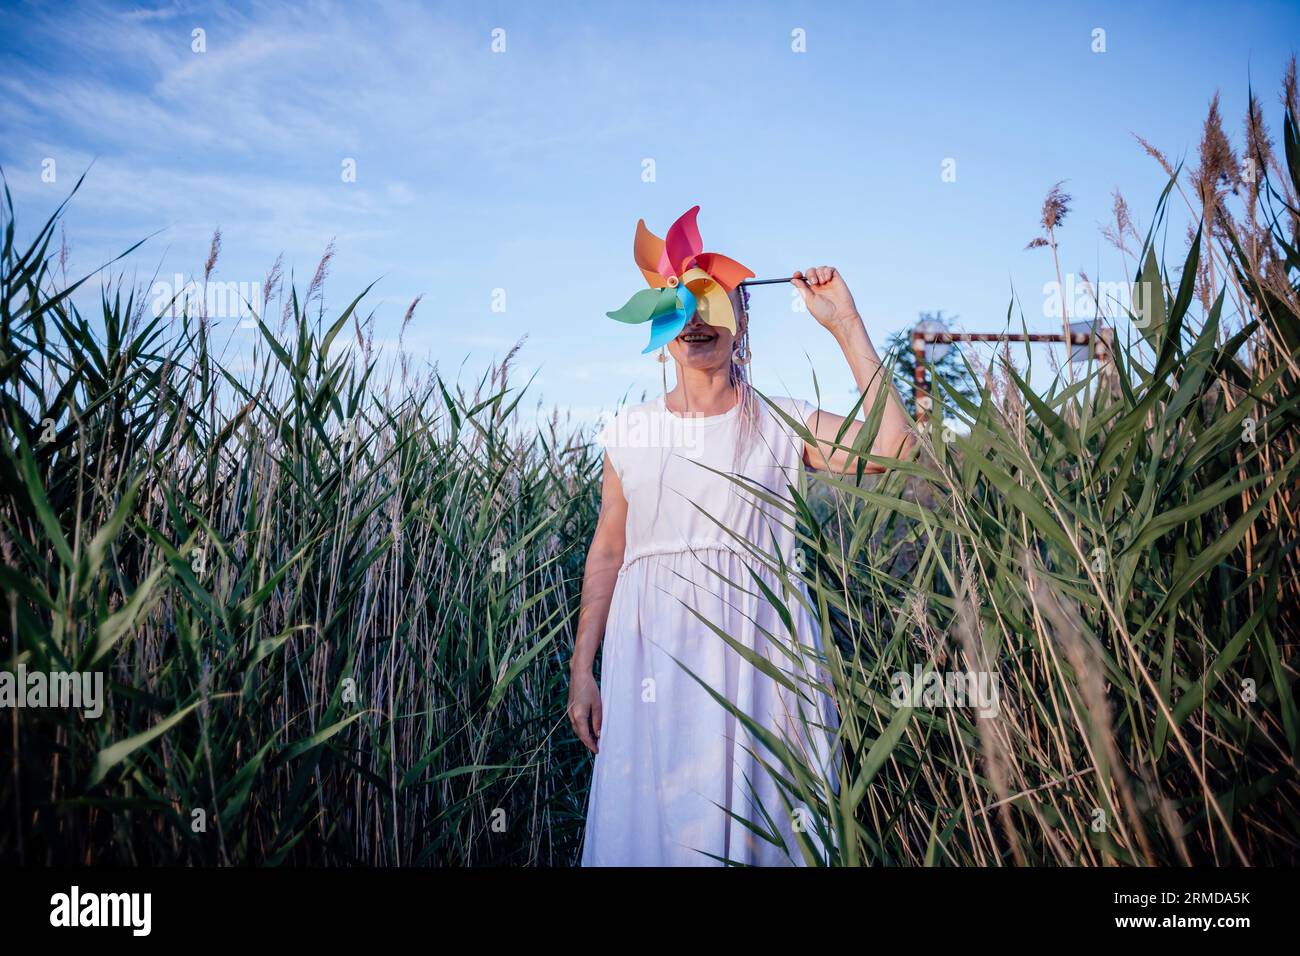 Mädchen mit unerkennbarem Gesicht hält Windmühle, Windenergie Stockfoto